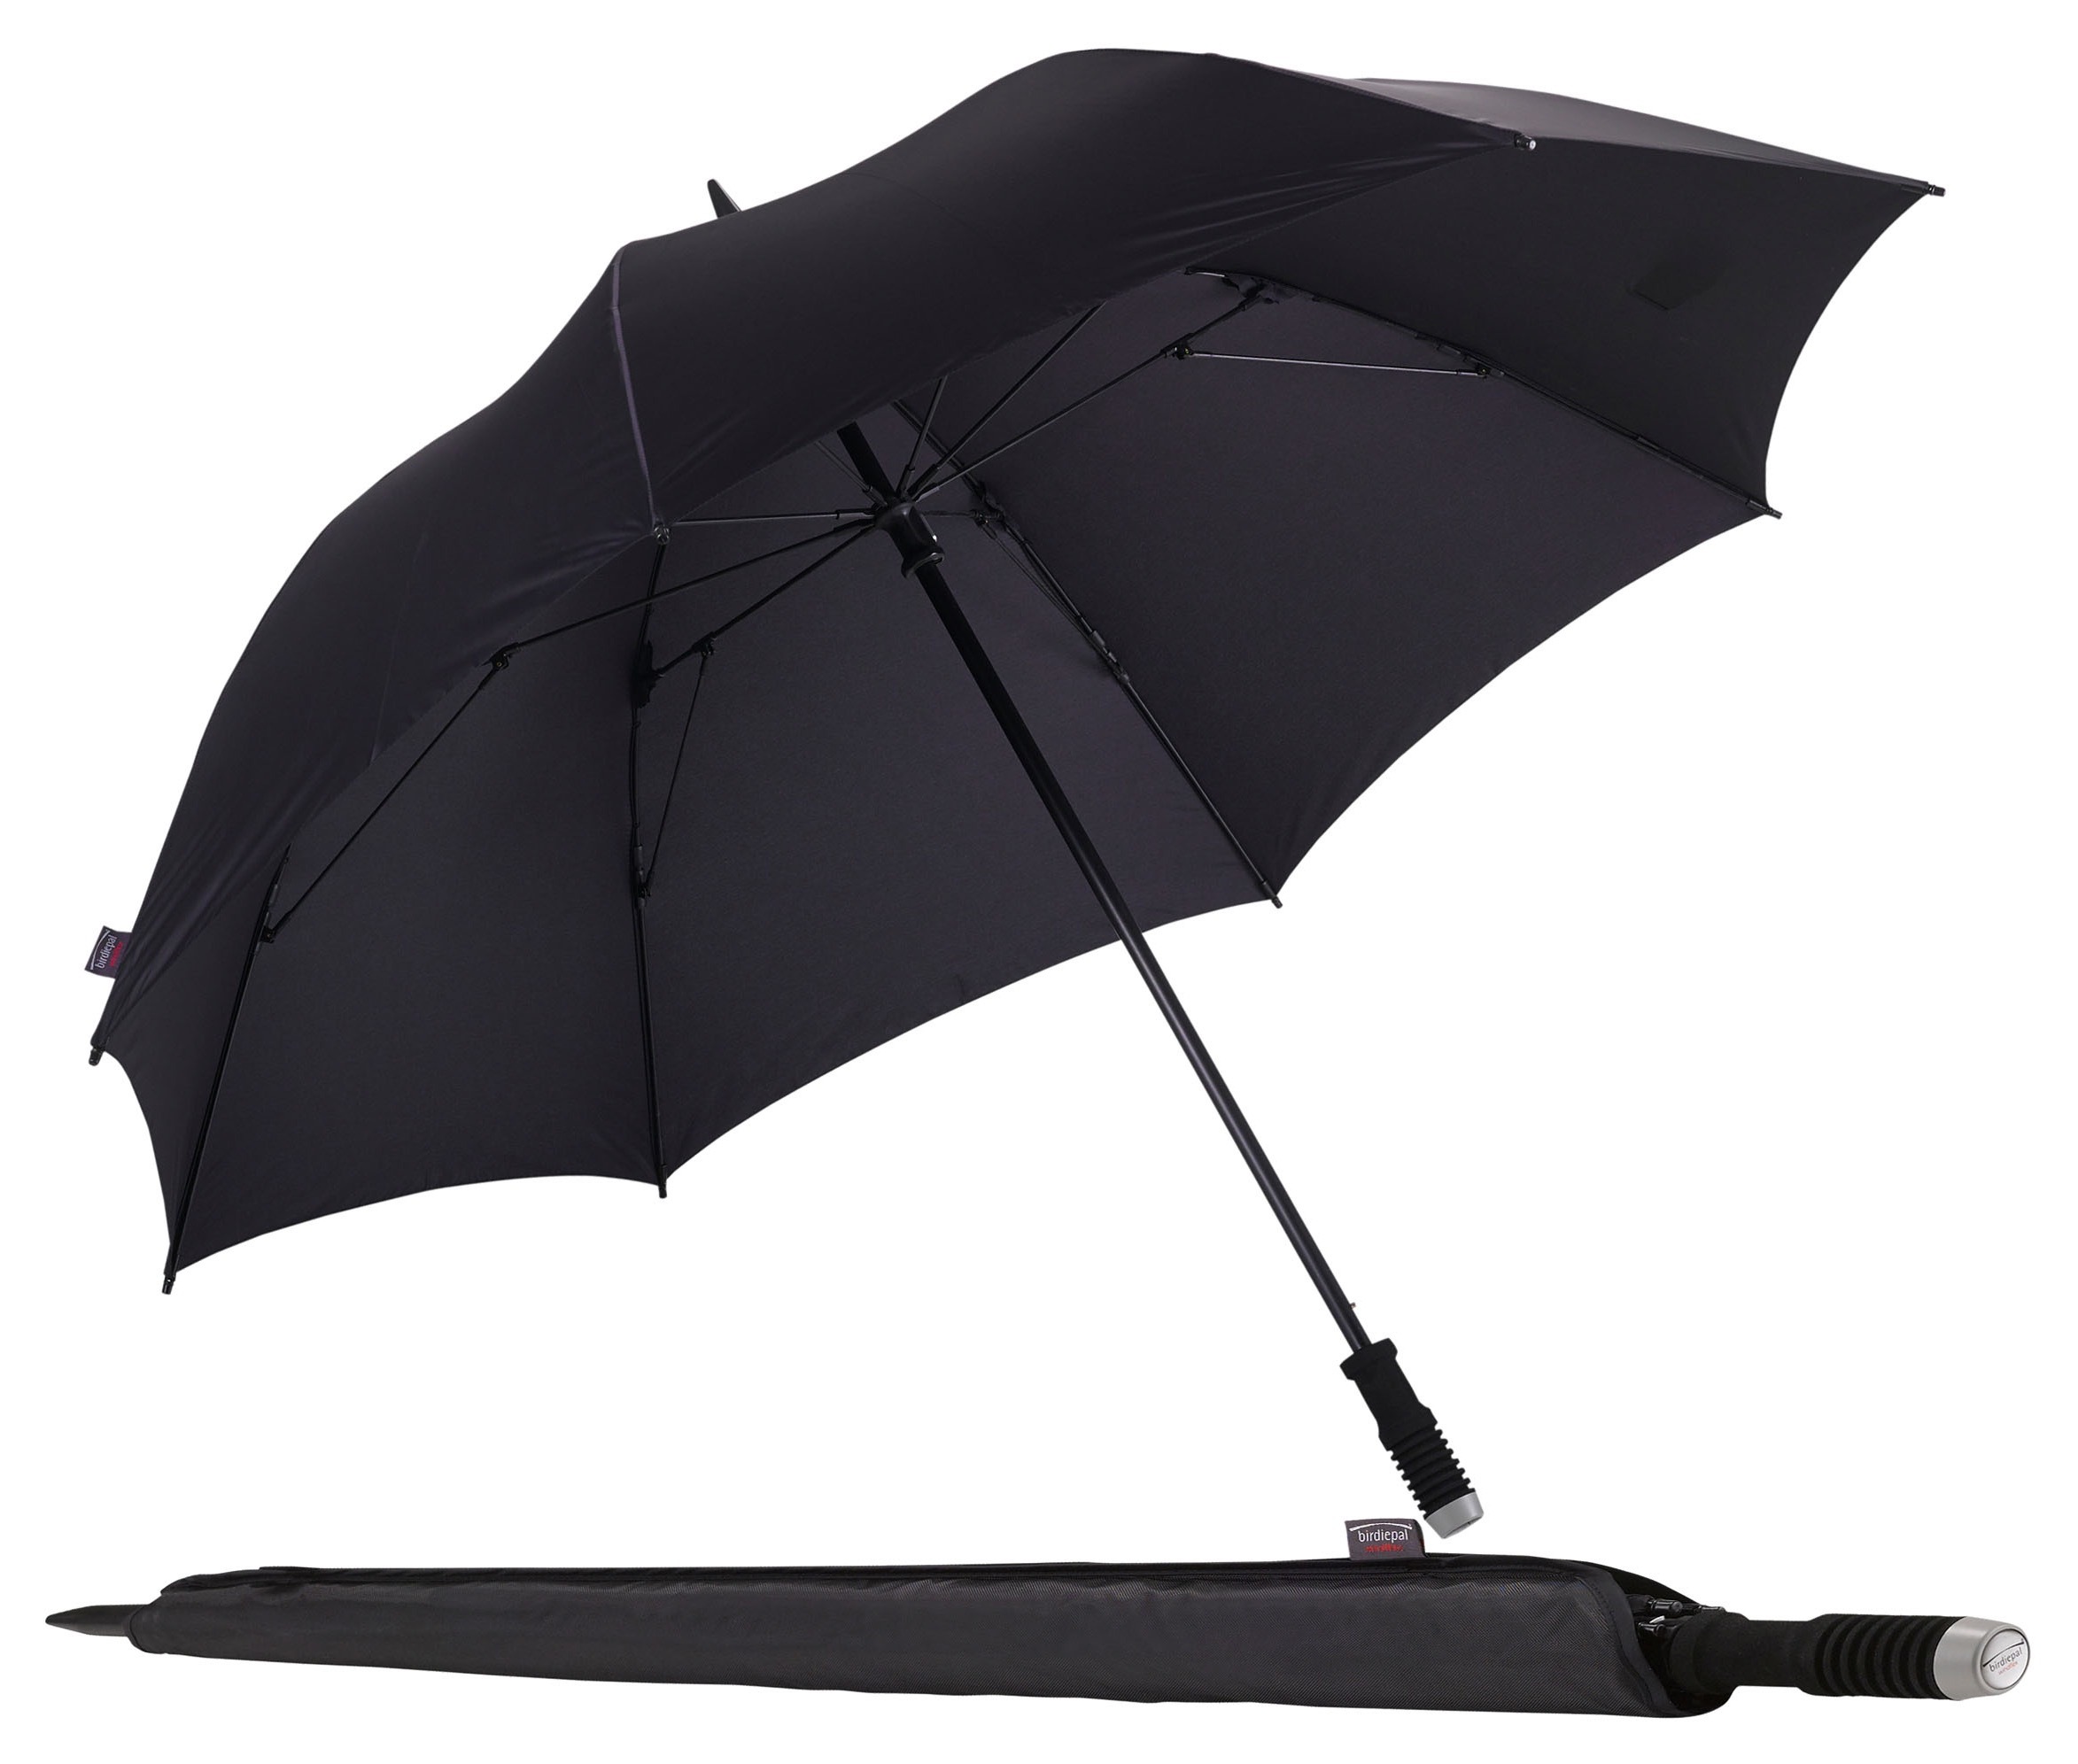 EuroSCHIRM Partnerschirm "birdiepal windflex", Regenschirm für Zwei, mit extra großem Dach und Windflex-System